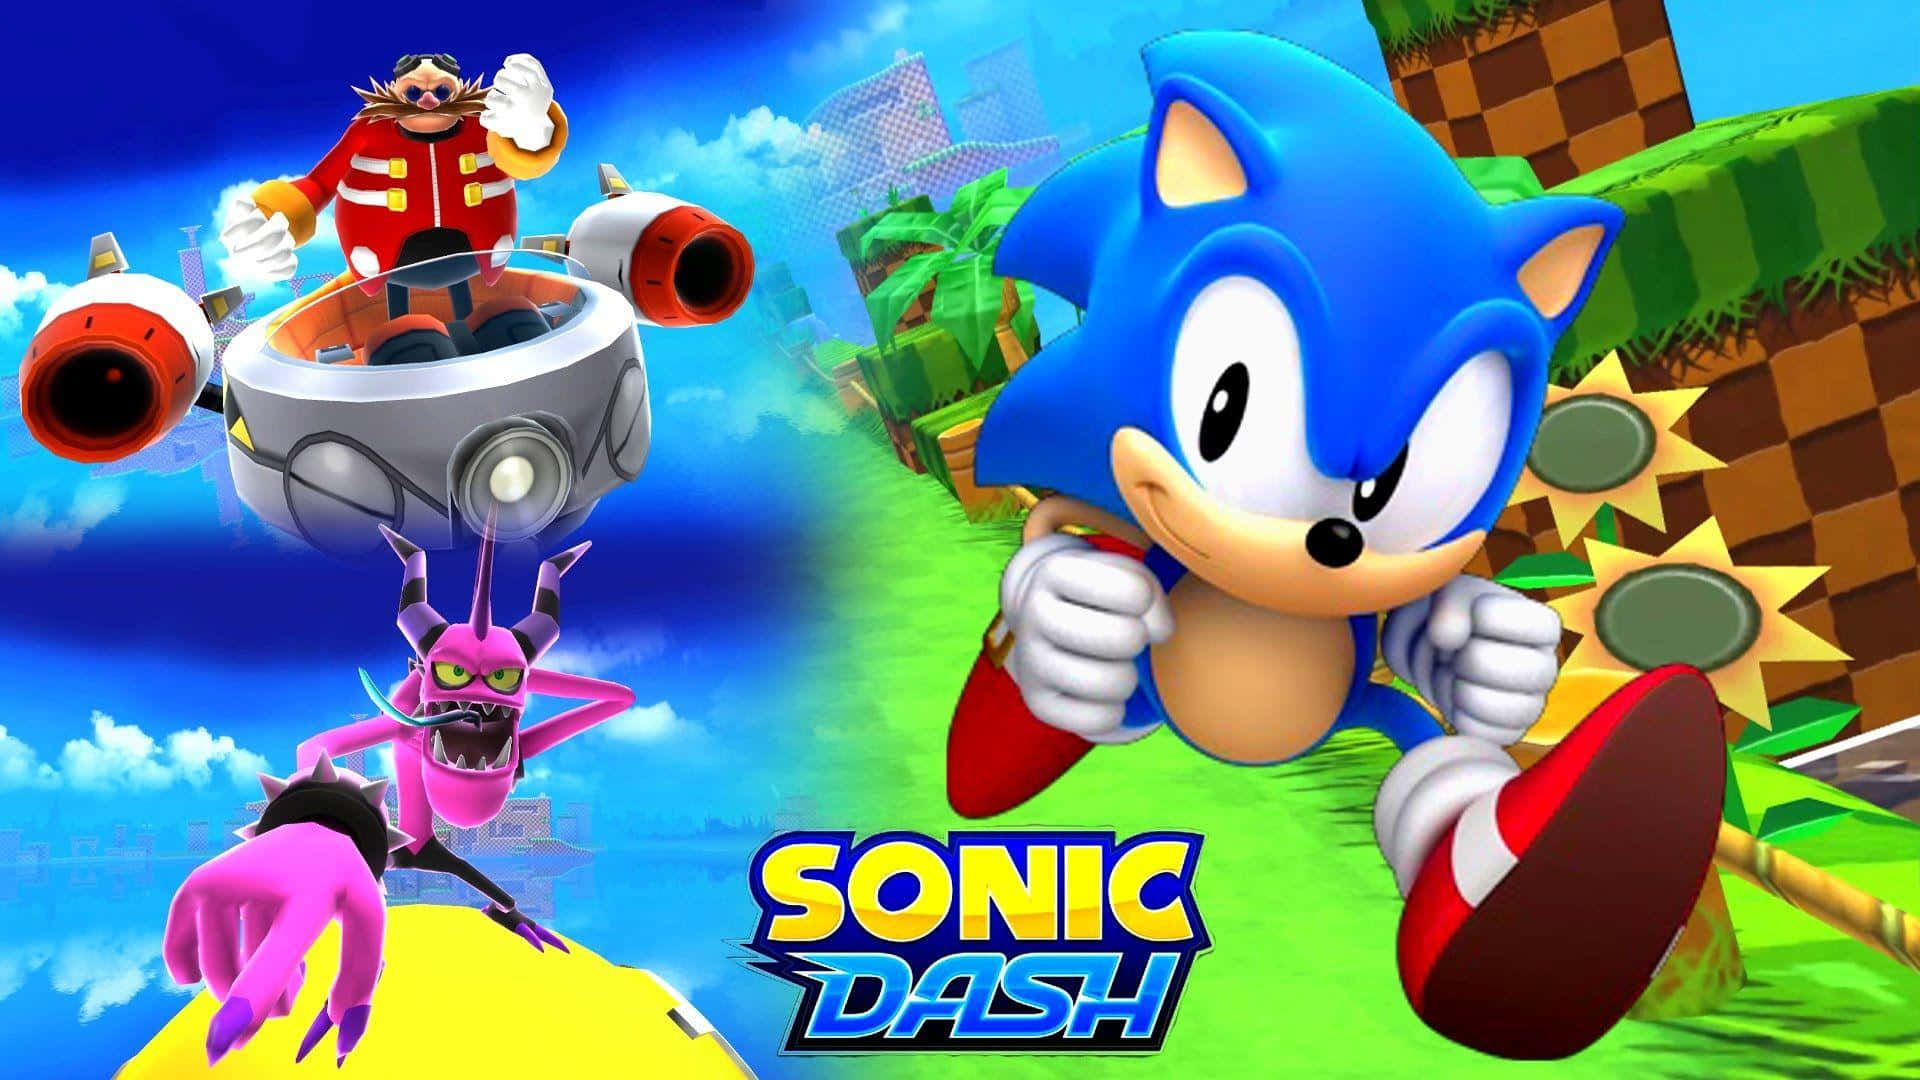 SONIC DASH + - Sonic the Hedgehog